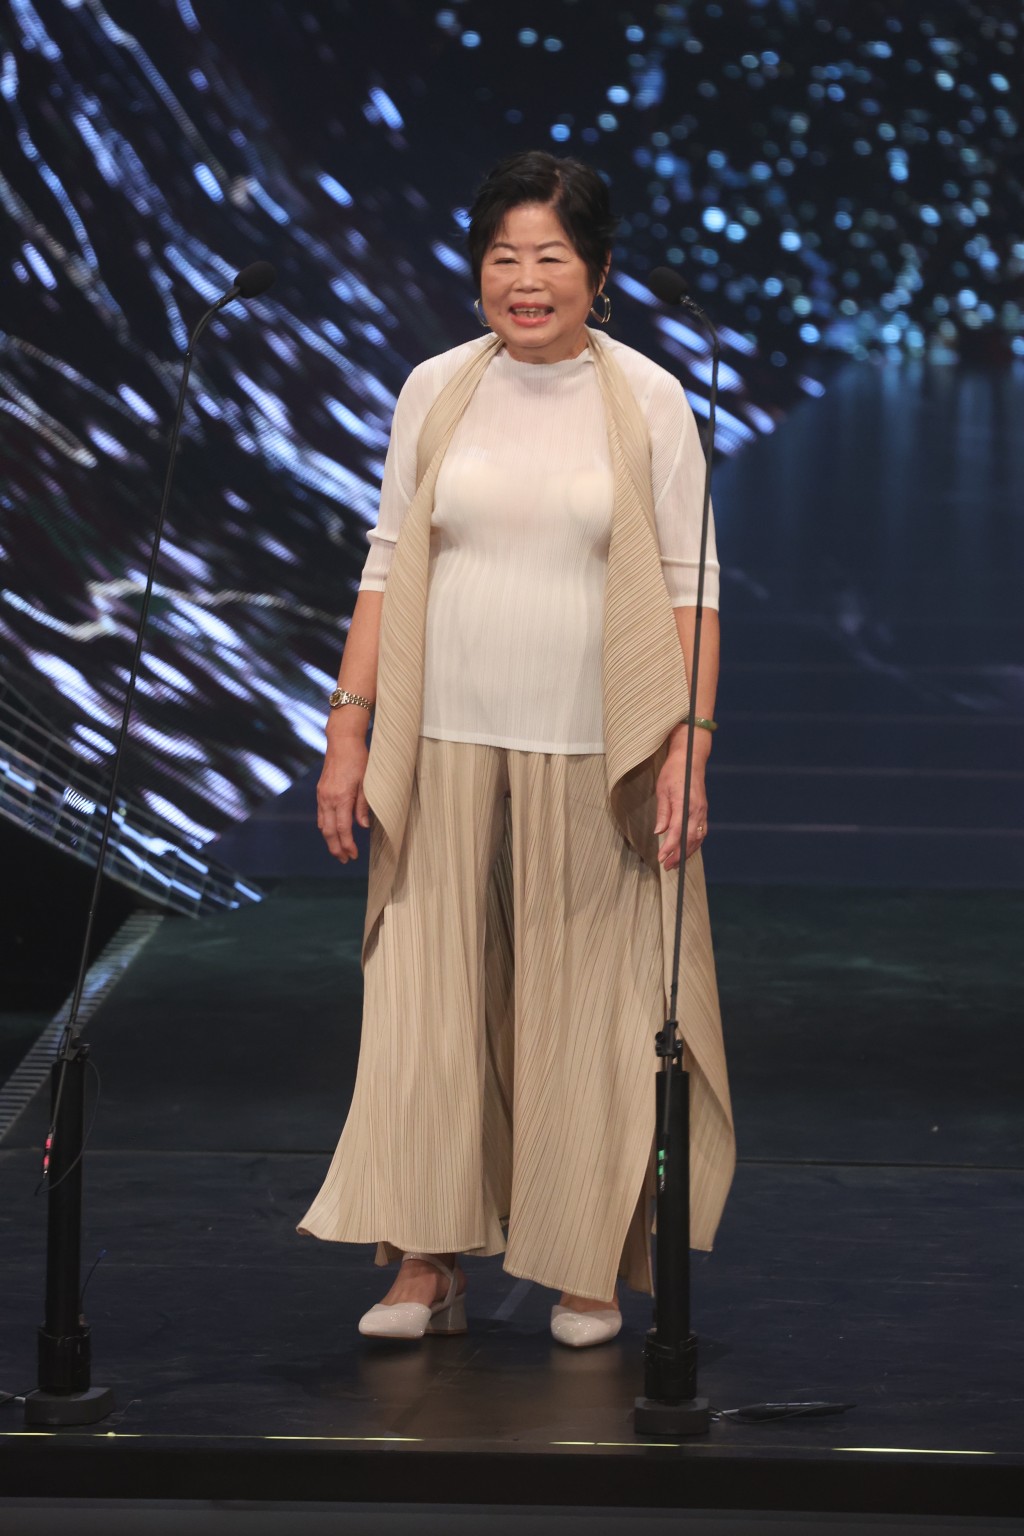 从事电影服装管理逾40年的「萍姐」唐萍获得「专业精神奖」。